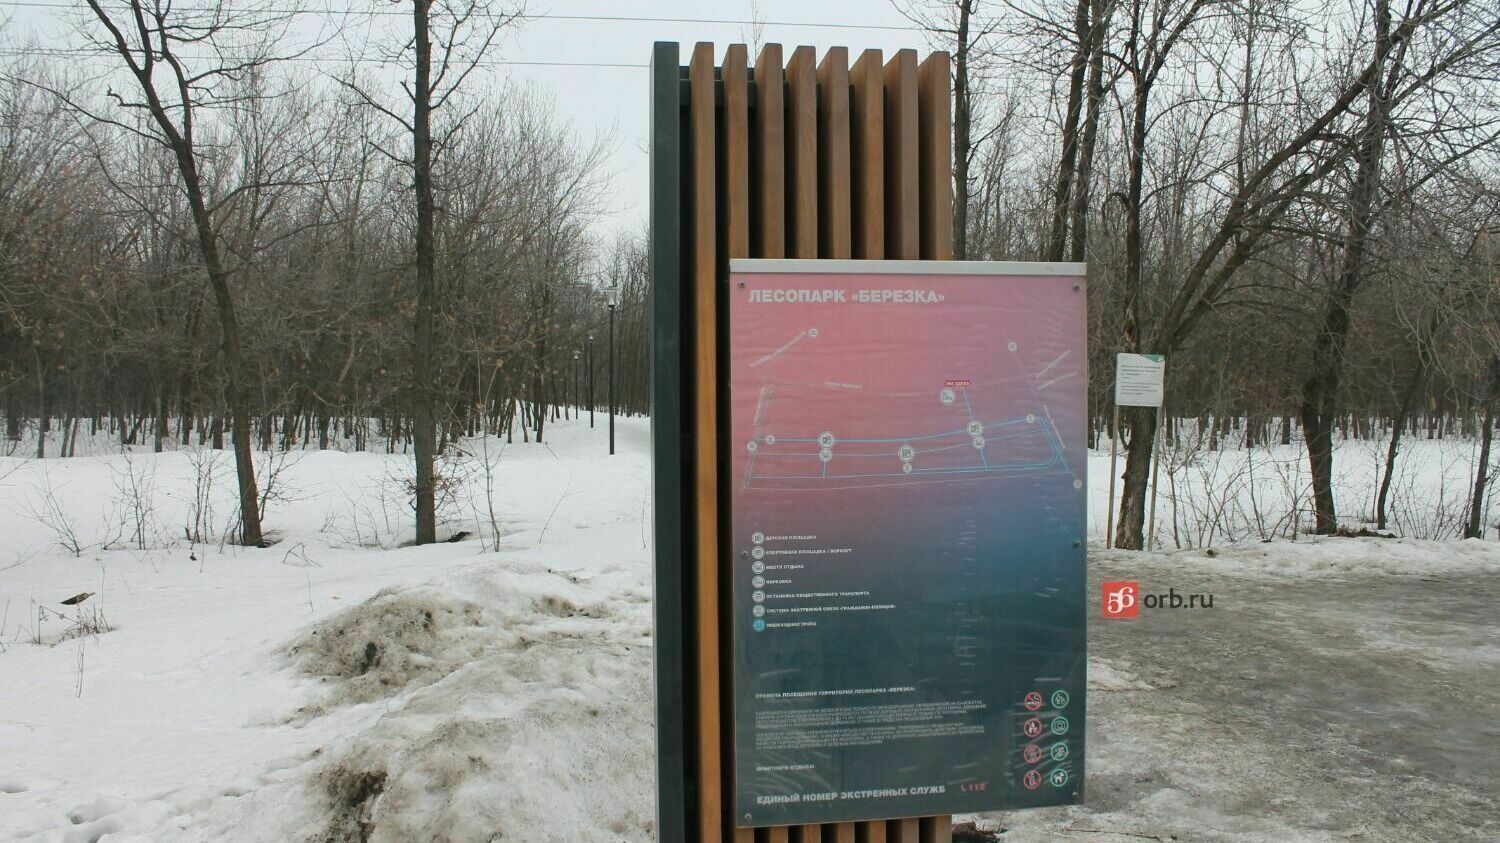 Что нового появится в оренбургском лесопарке «Березка» в этом году?